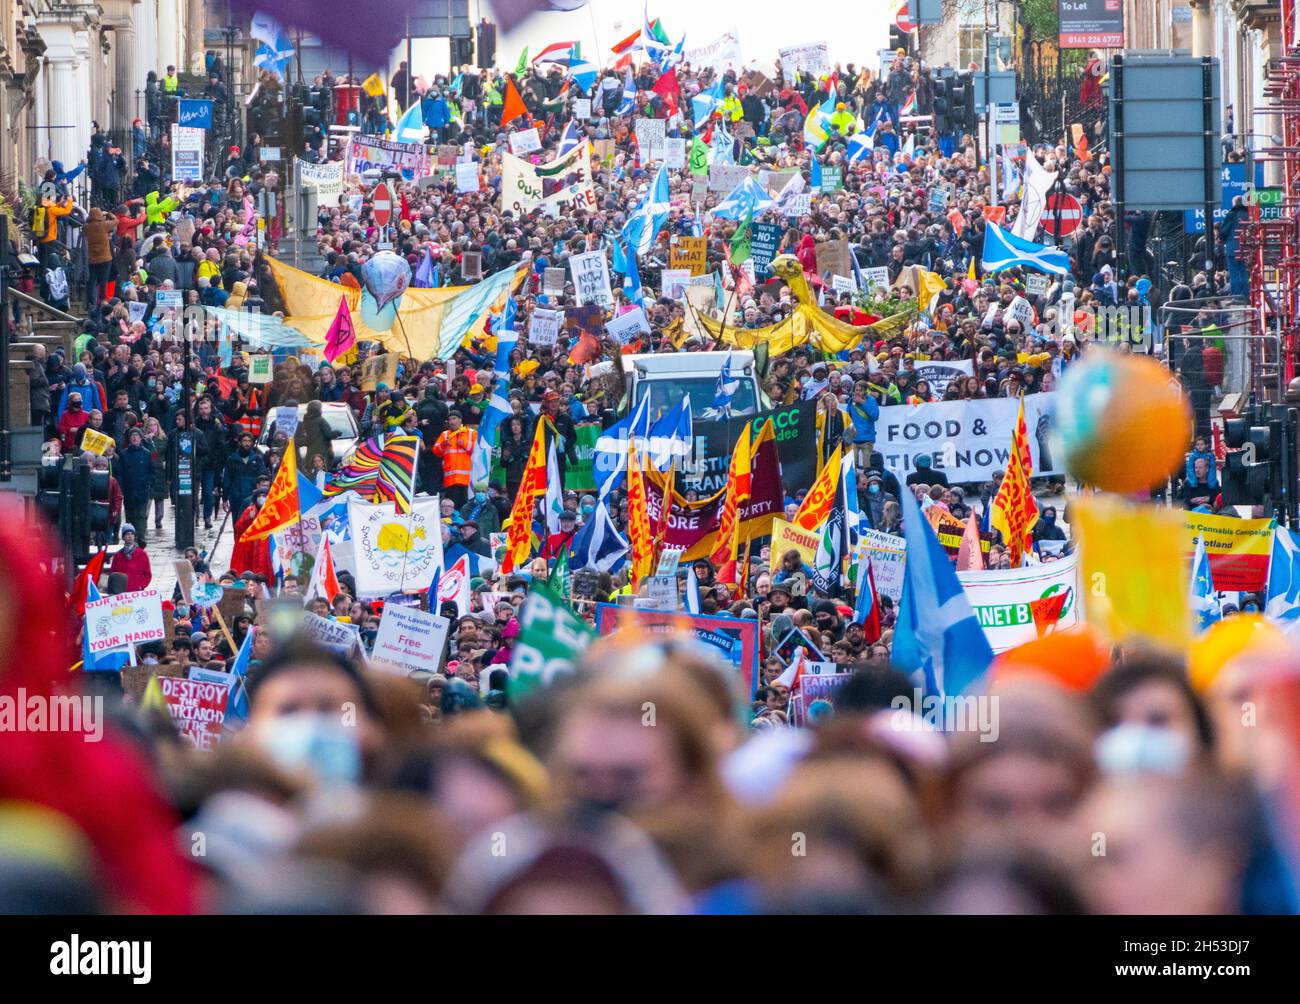 Glasgow, Scozia, Regno Unito. 6 novembre 2021. Giornata globale d'azione per la giustizia climatica marcia che si svolge nel centro di Glasgow. , Scozia, Regno Unito. PIC; Iain Masterton/Alamy Live News. Foto Stock